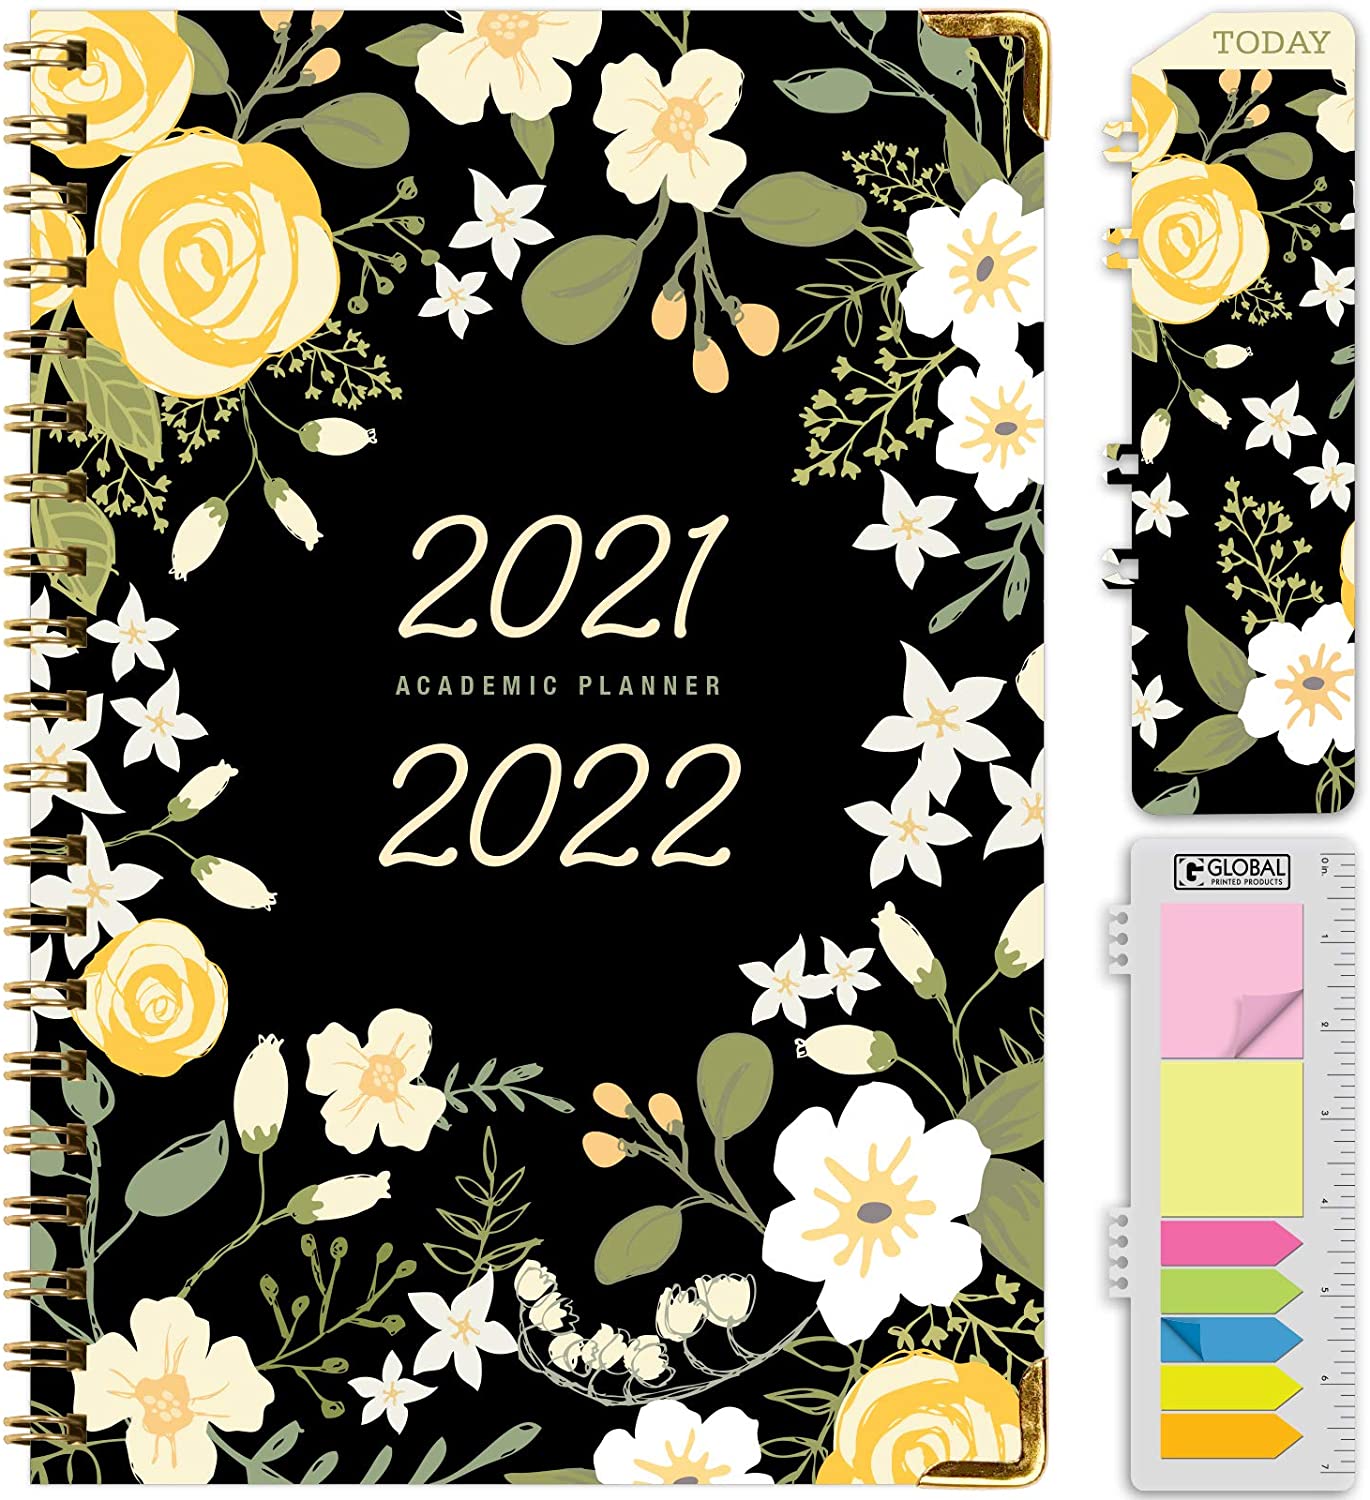 Agenda con diseño floral y separadores adhesivos de colores